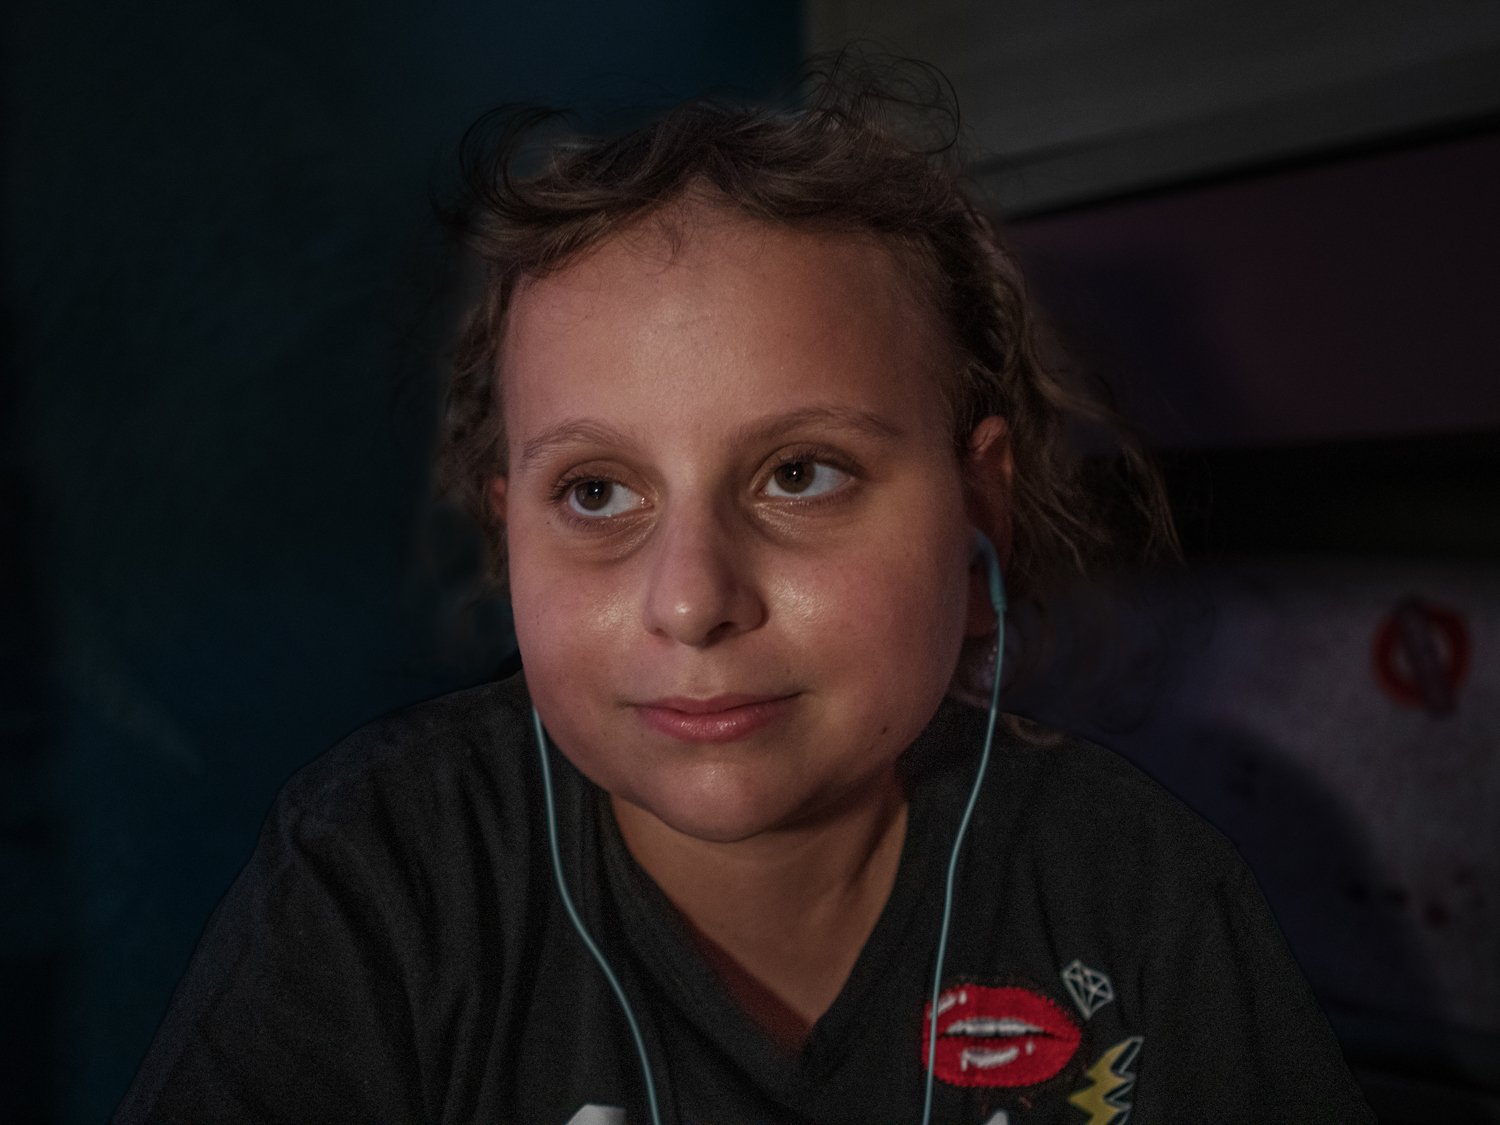  Miriam Dalise, 16 anni, sopravvissuta al medulloblastoma, una rara forma di tumore maligno al cervello di cui si è ammalata a 5 anni. Il medulloblastoma ha un’incidenza di 2 casi su 1 milione di abitanti. Nel solo comune di Acerra sono già 5 i casi 